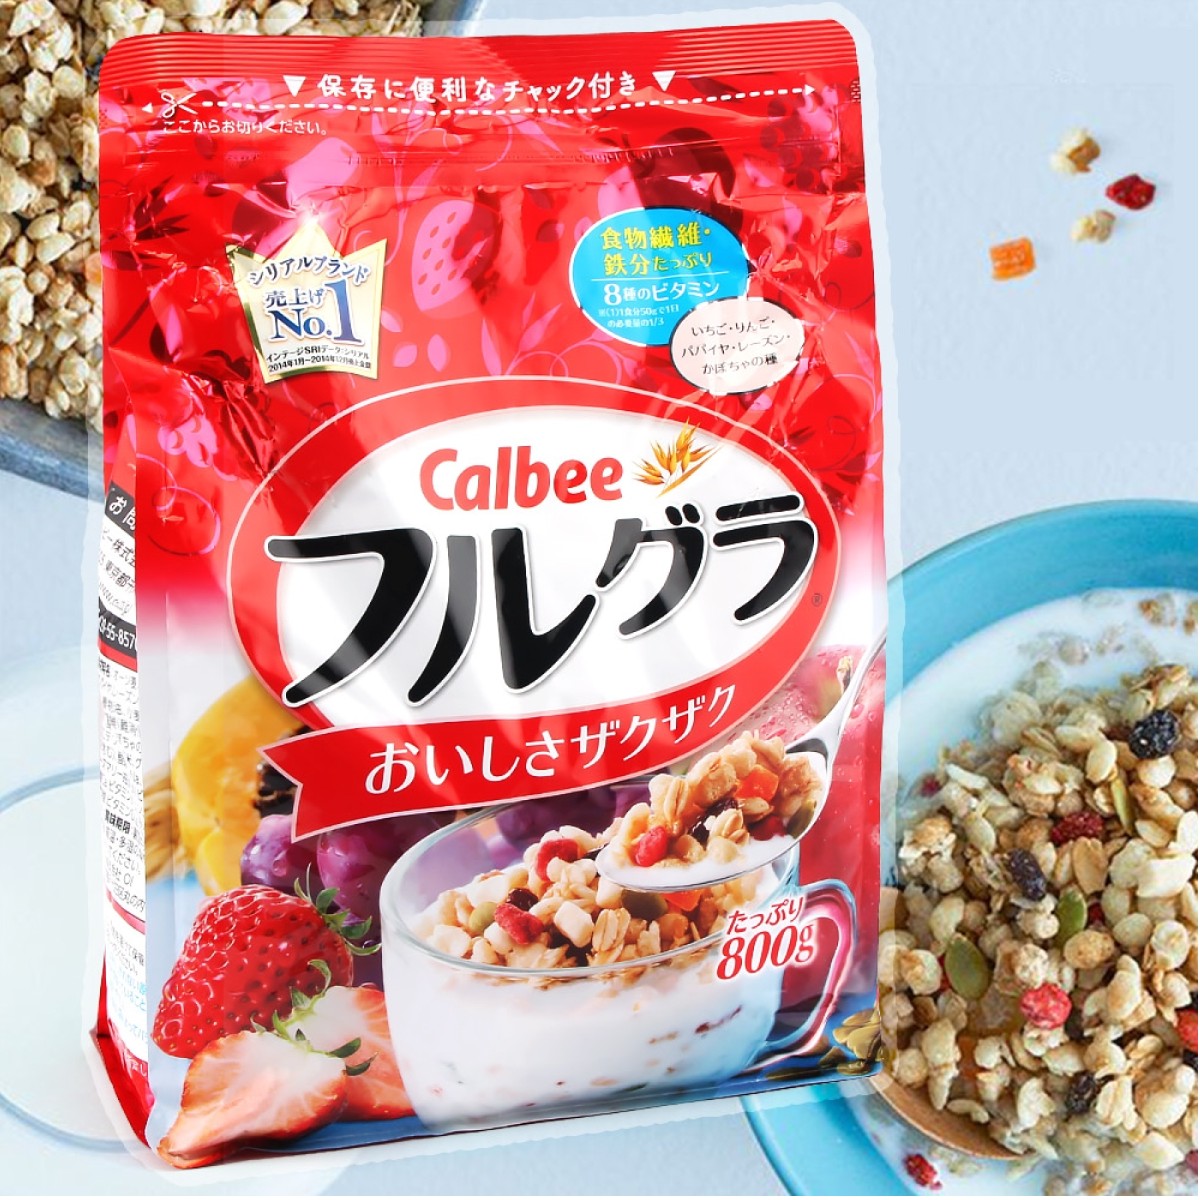 Calbee là ngũ cốc ăn sáng cho bé từ Nhật Bản. 